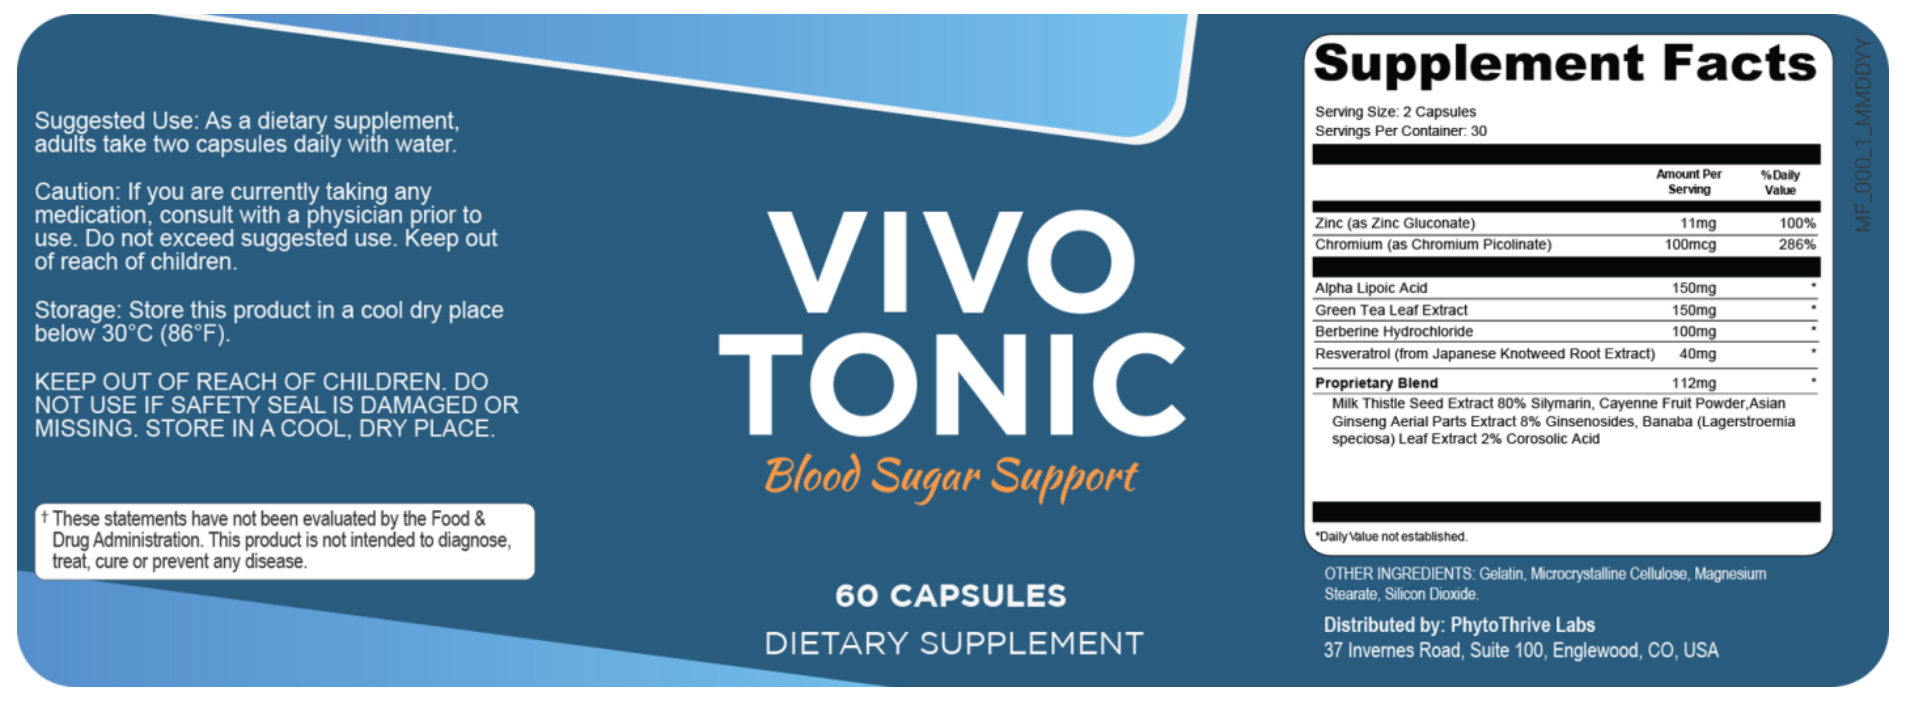 VivoTonic Supplement Facts